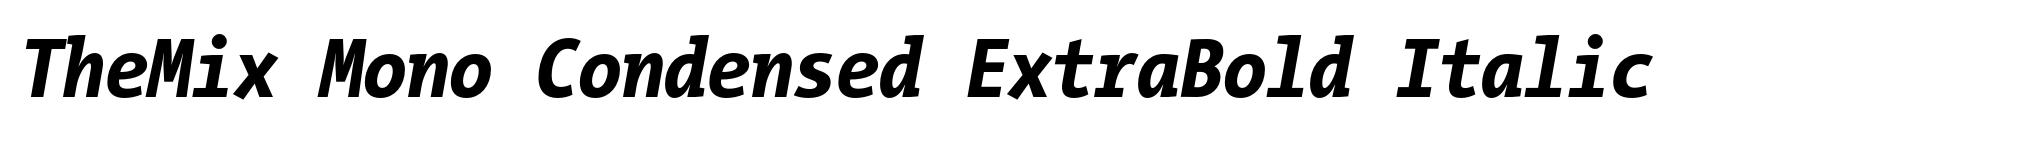 TheMix Mono Condensed ExtraBold Italic image